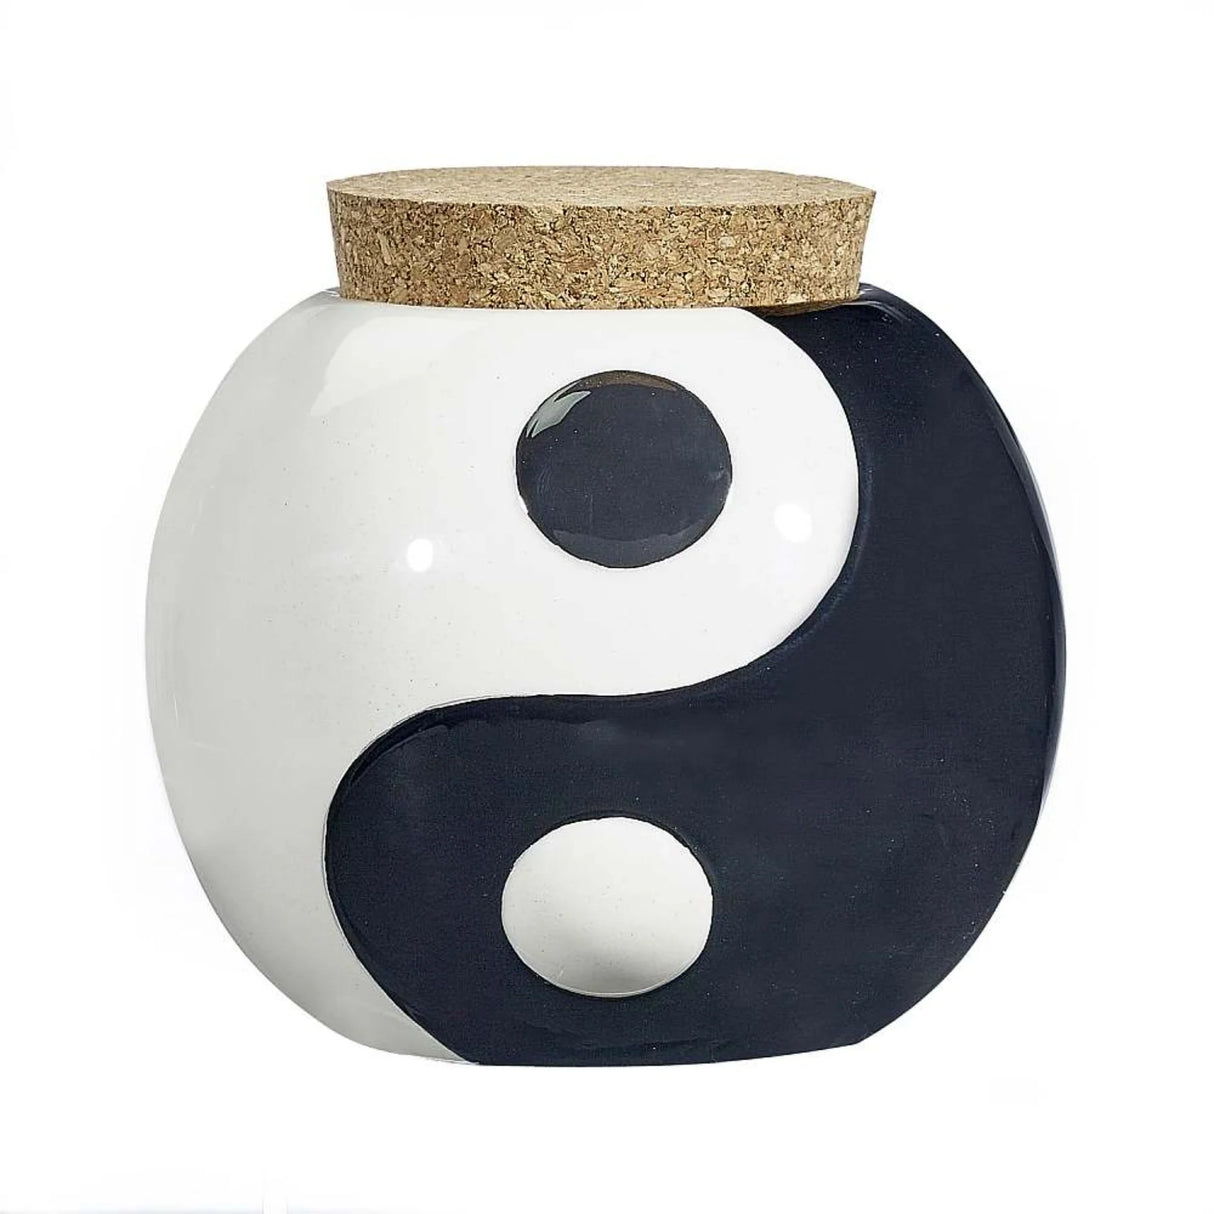 Fashioncraft 1.25oz Ceramic Stash Jar - Yin Yang